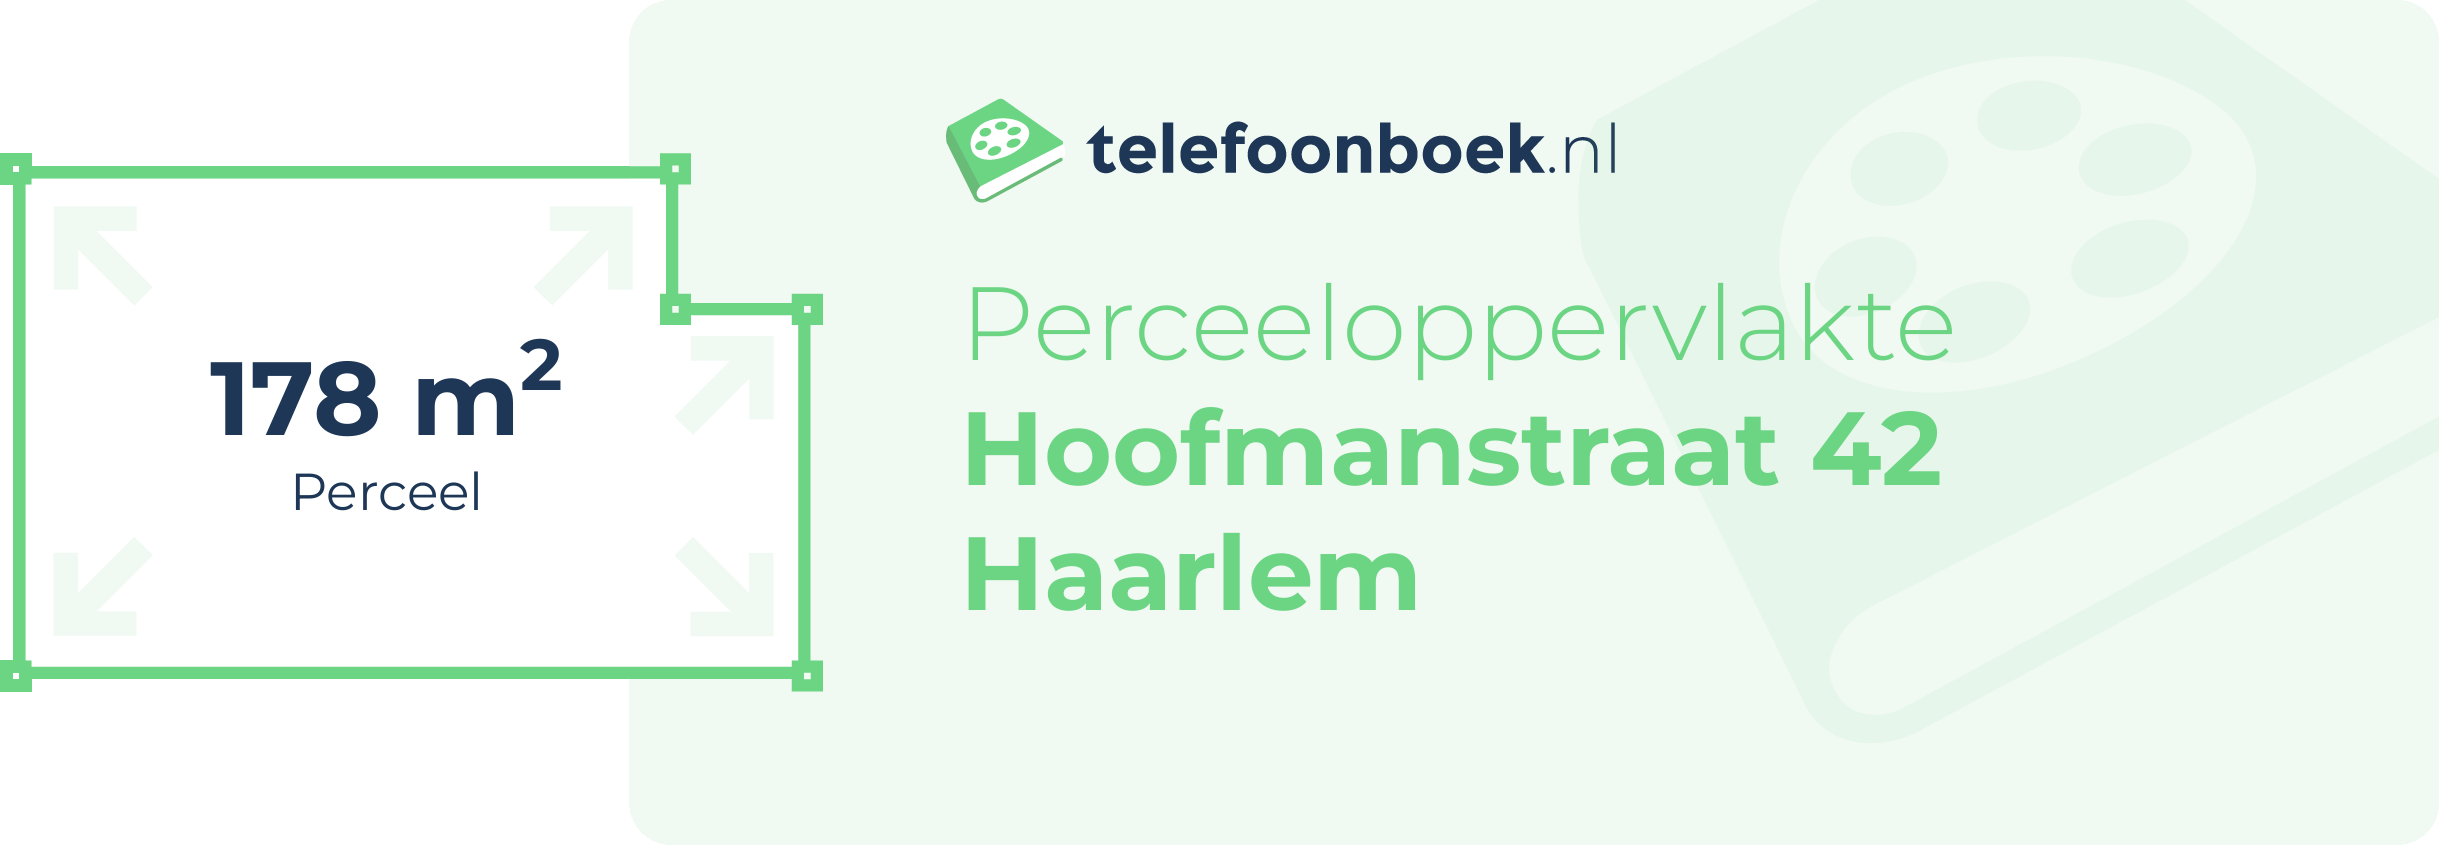 Perceeloppervlakte Hoofmanstraat 42 Haarlem